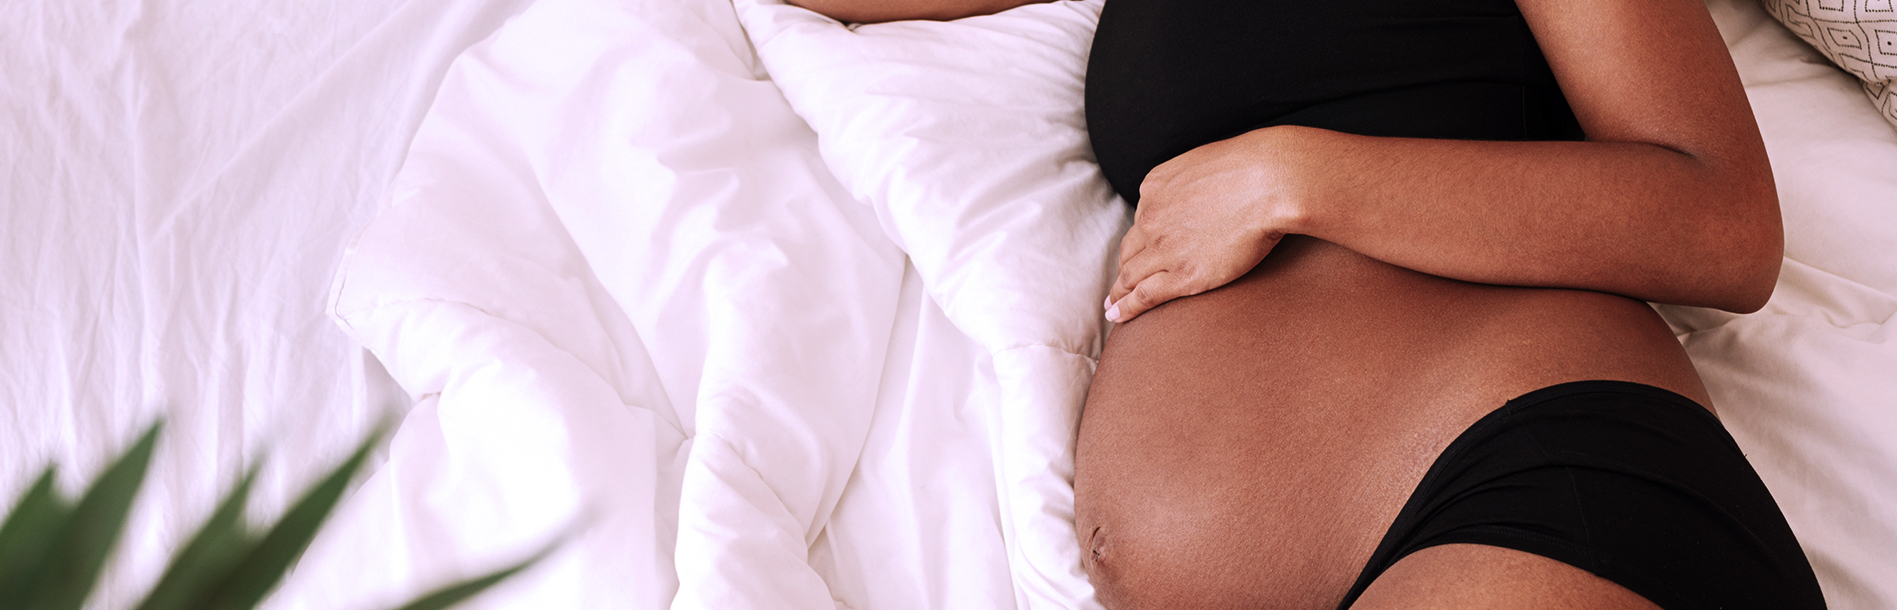 6 complicações mais comuns na gravidez